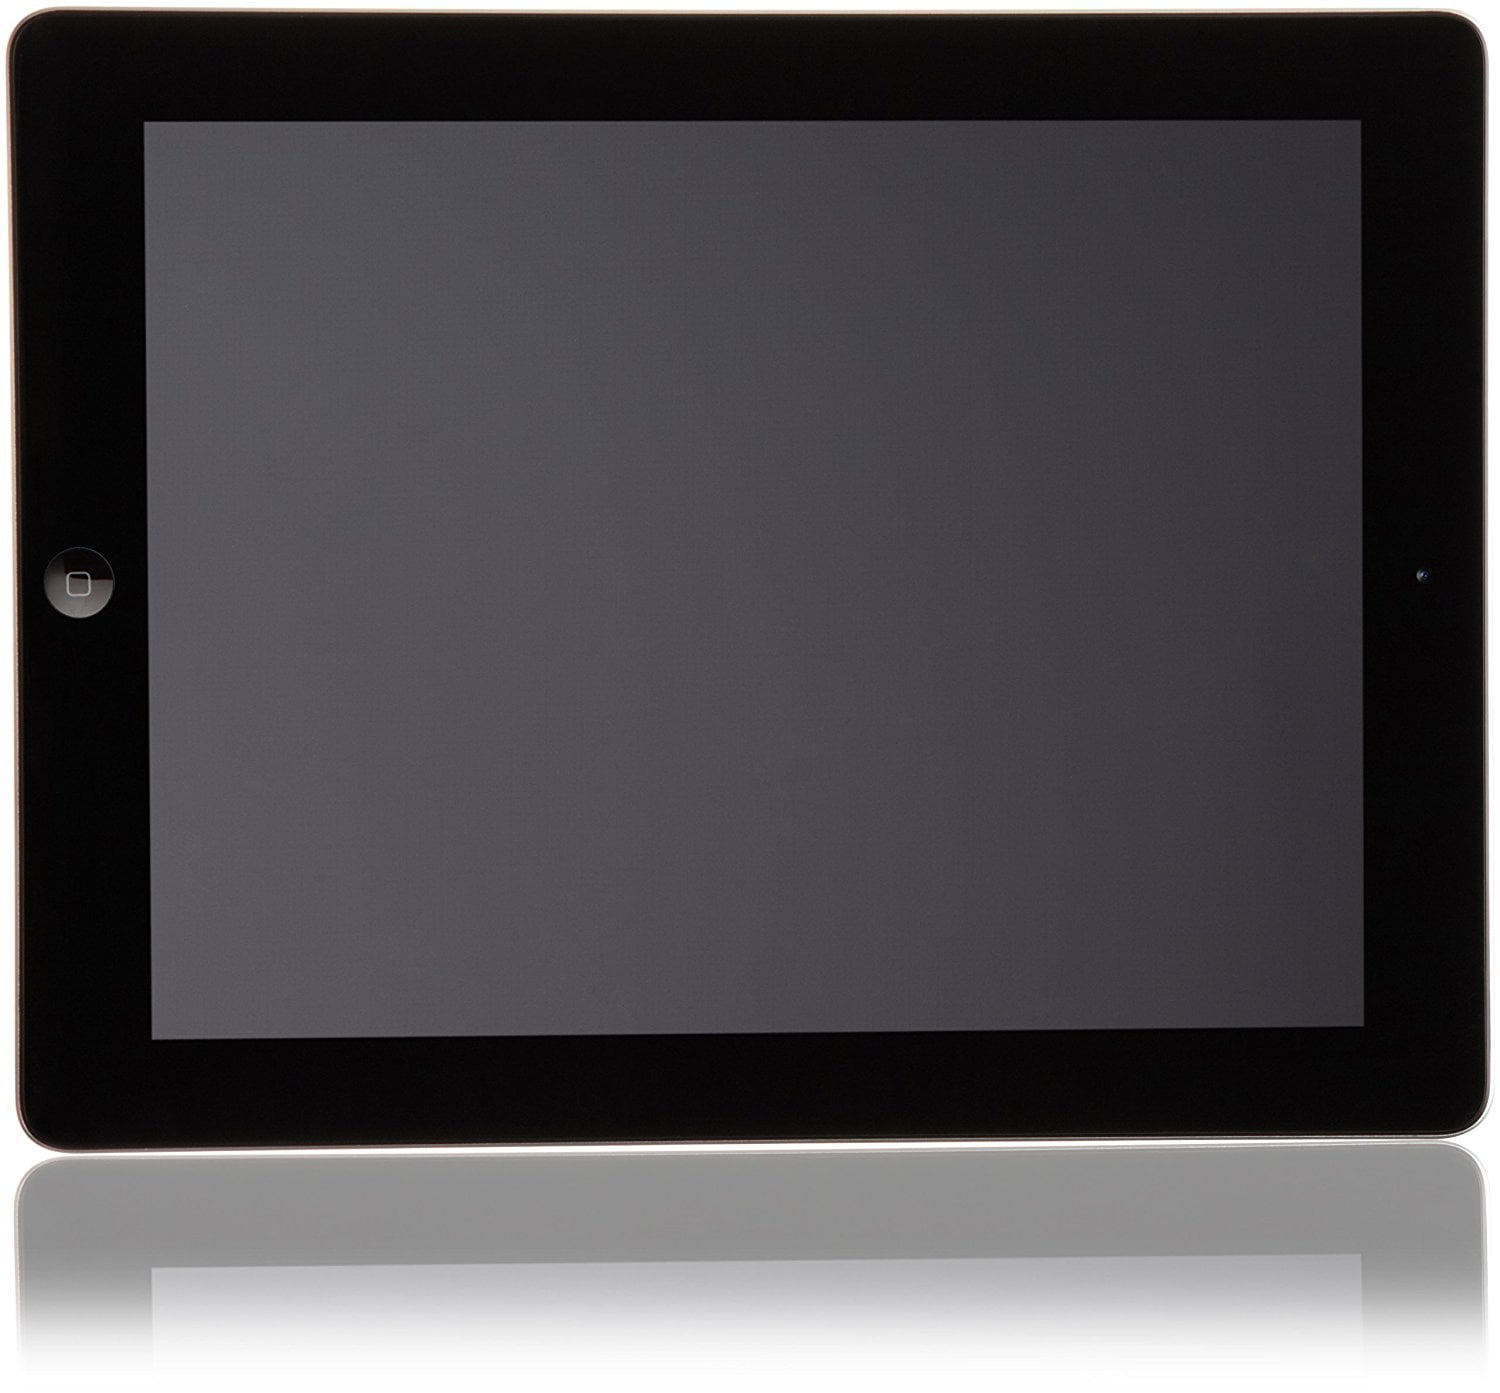 Kartofler neutral kapillærer Restored MP Apple iPad 3 Retina Display WiFi 16GB Black (3rd Generation)  (Refurbished) - Walmart.com